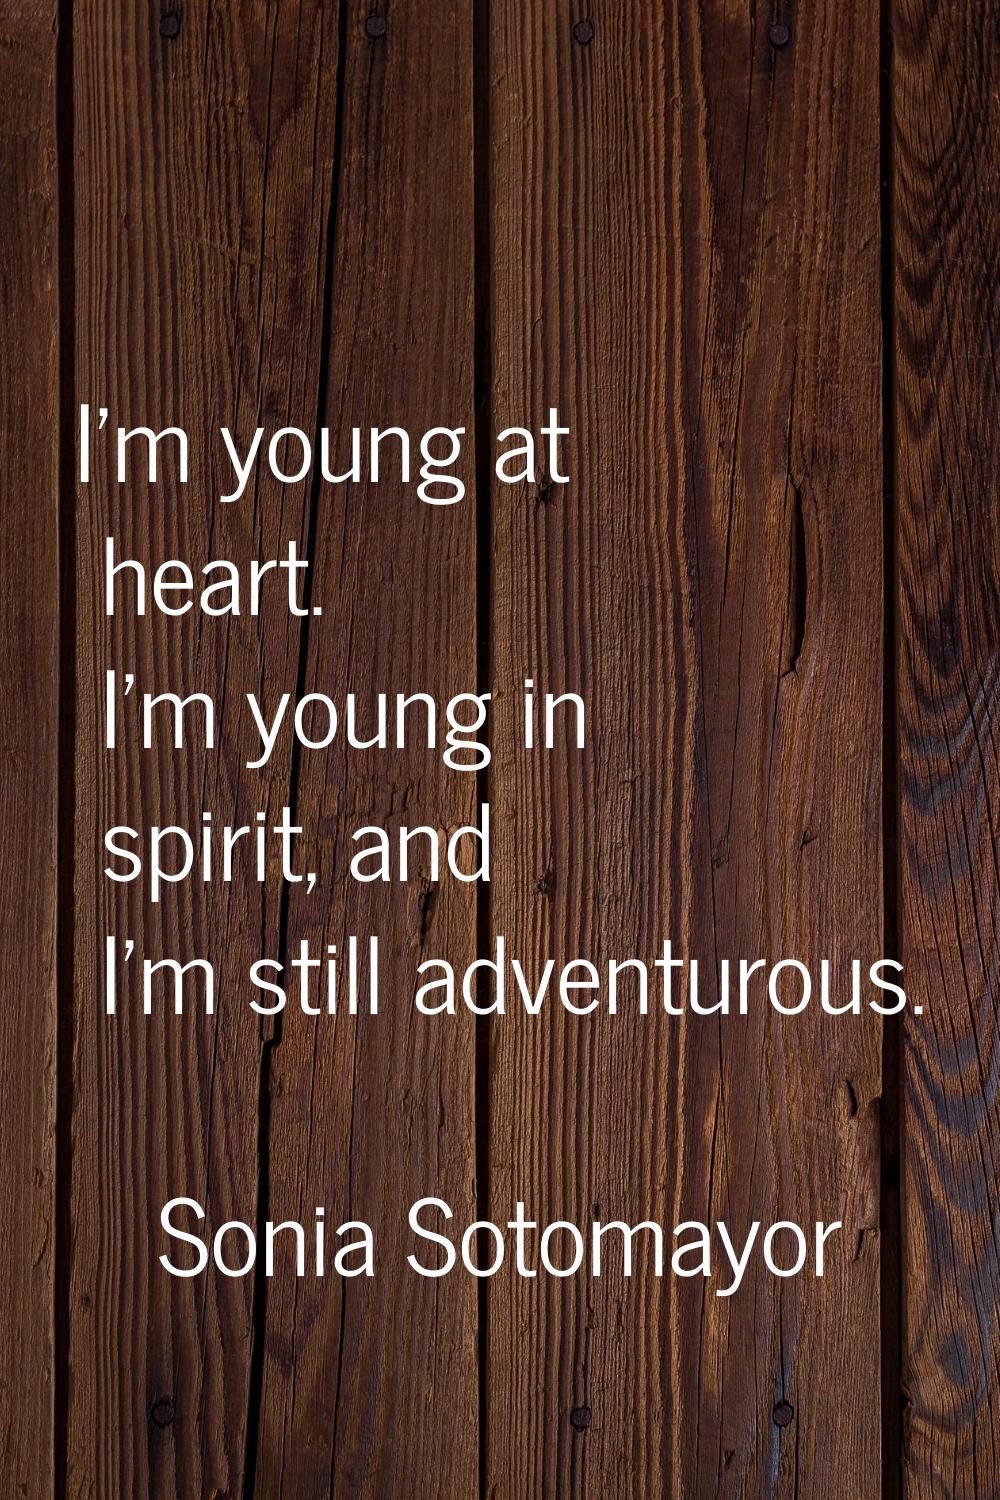 I'm young at heart. I'm young in spirit, and I'm still adventurous.